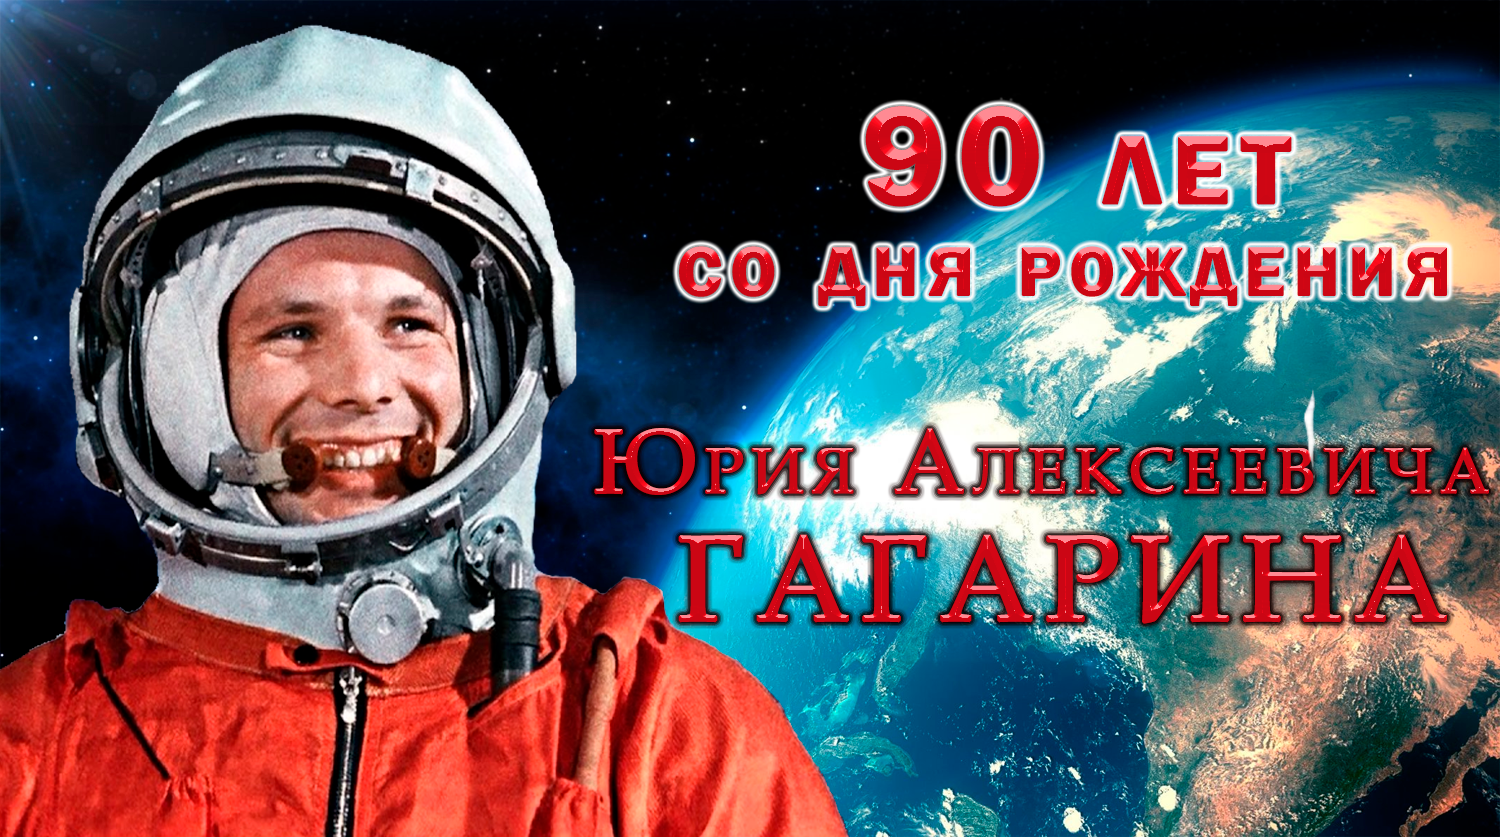 90 лет со дня рождения Юрия Алексеевича Гагарина.